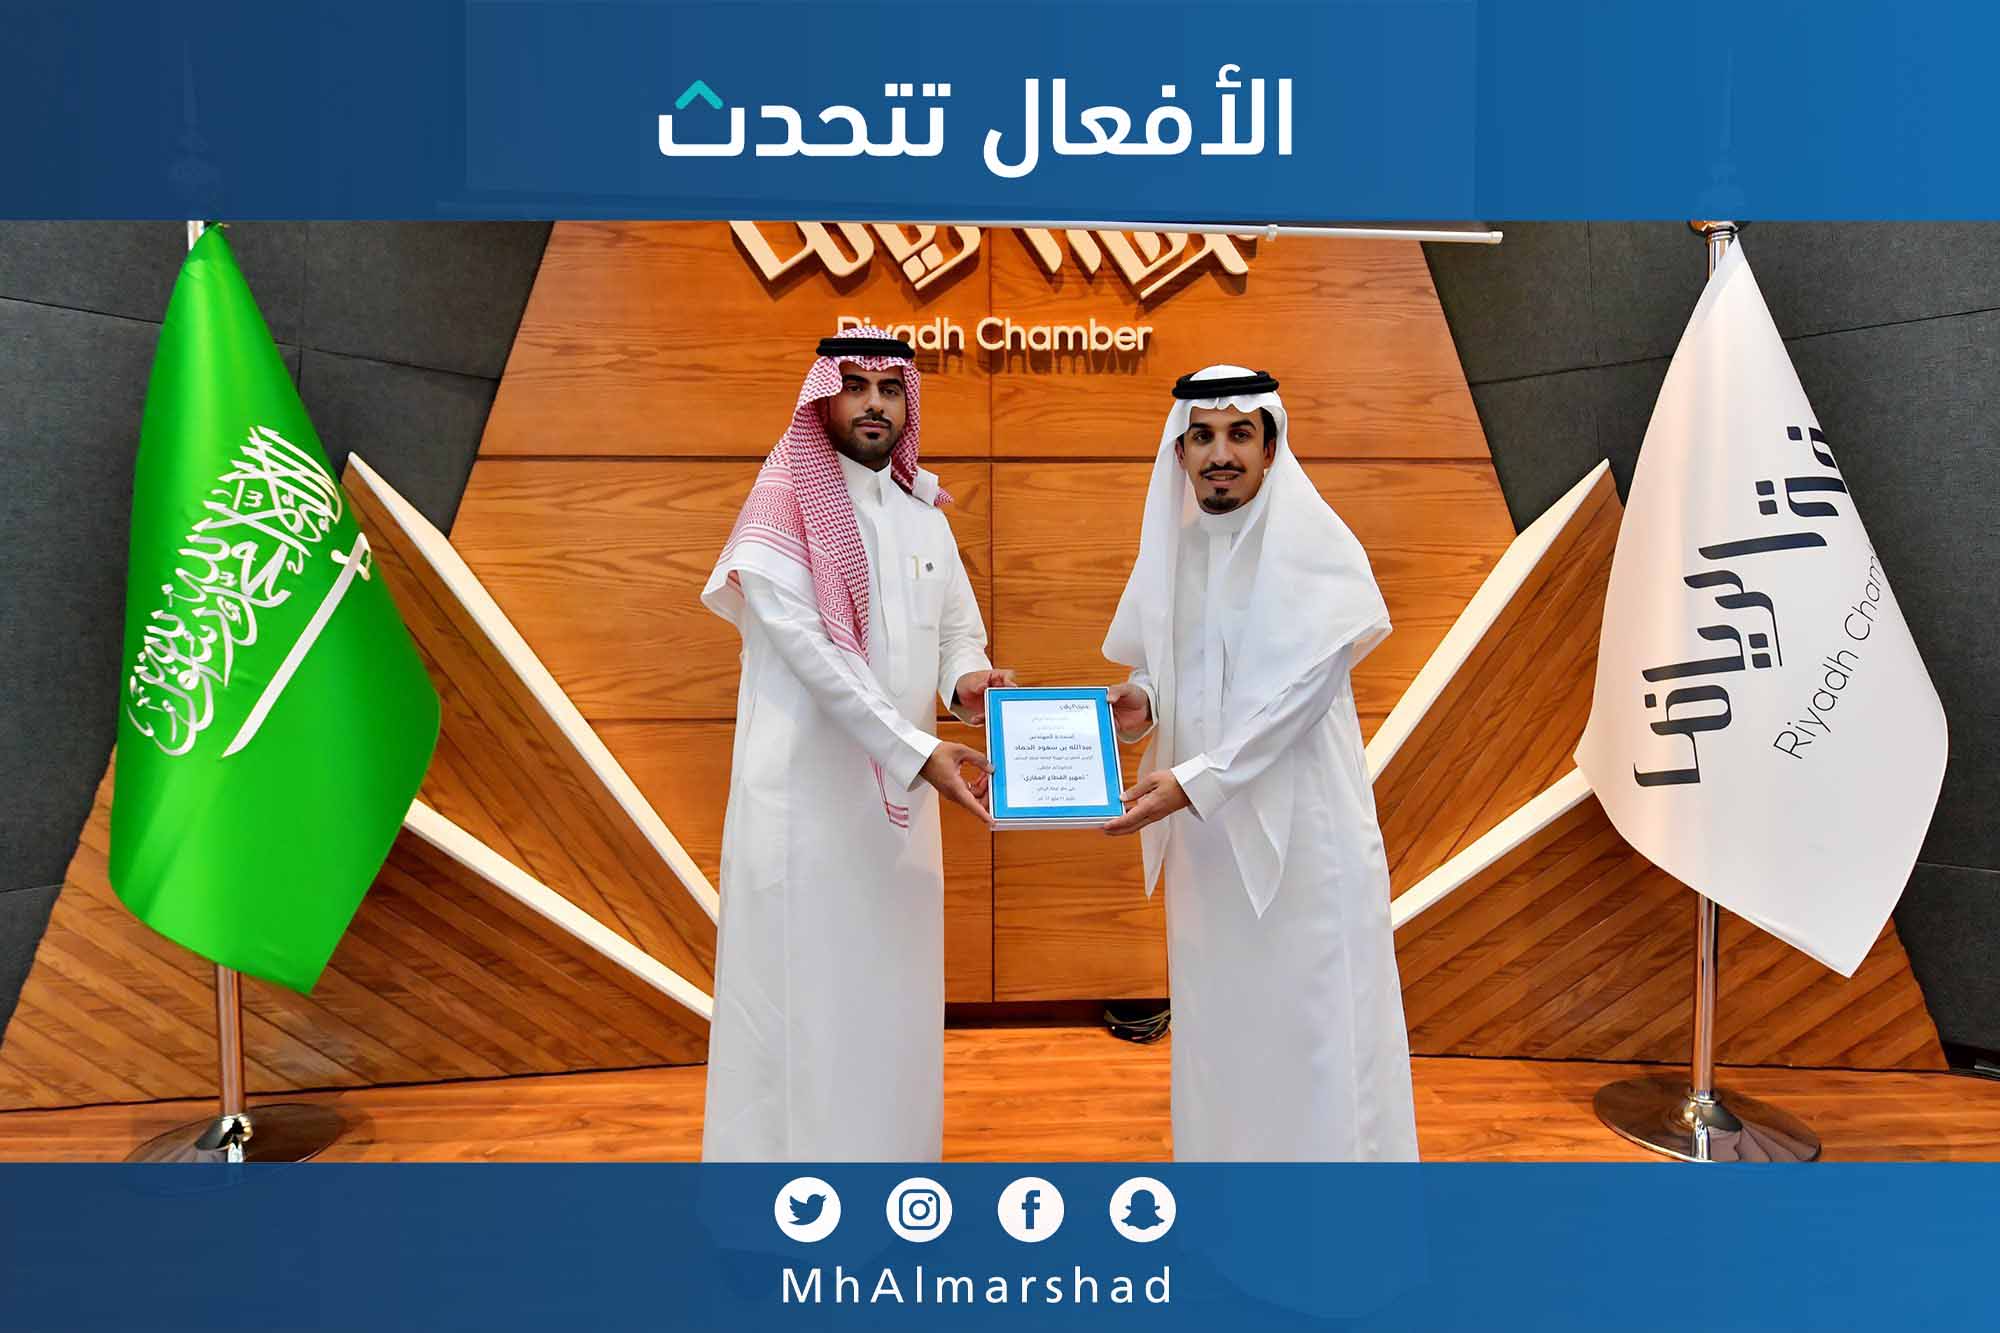 تكريم الرئيس التنفيذي للهيئة العامة للعقار من غرفة الرياض